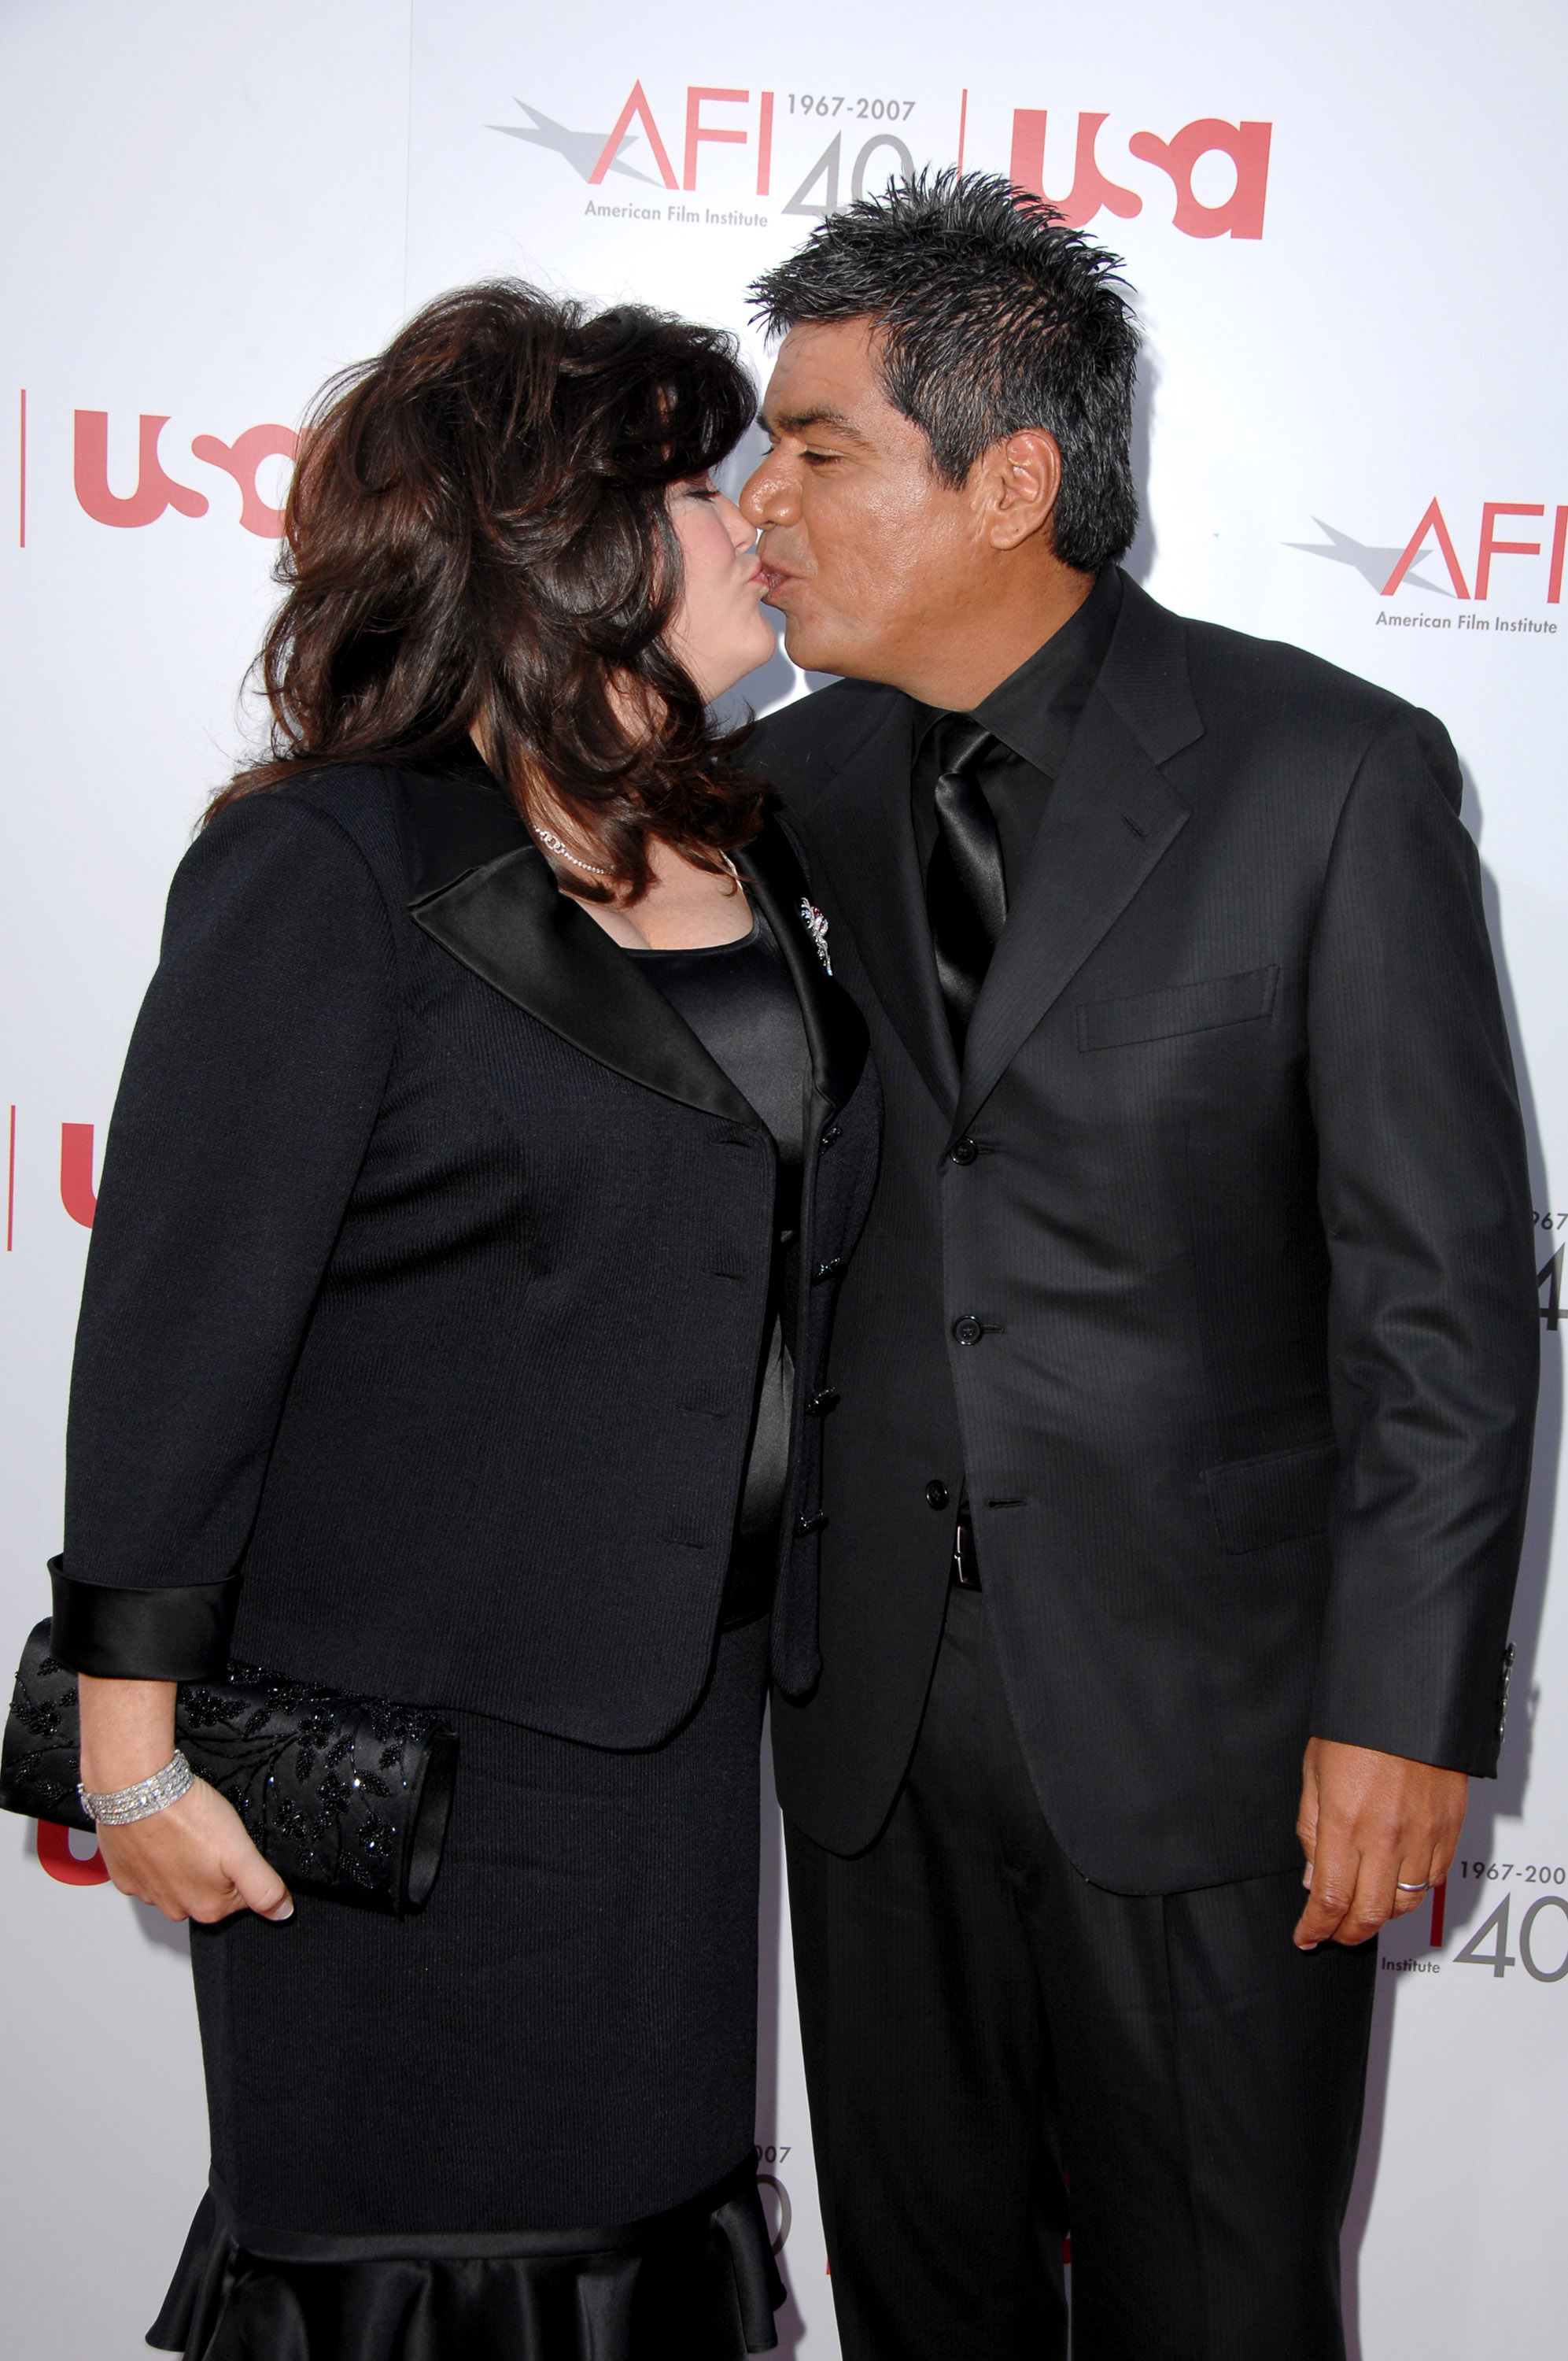 Ann Serrano et George Lopez à la 35e cérémonie annuelle du AFI Life Achievement Award en l'honneur d'Al Pacino au Kodak Theater le 7 juin 2007 à Hollywood, Californie. | Source : Getty Images